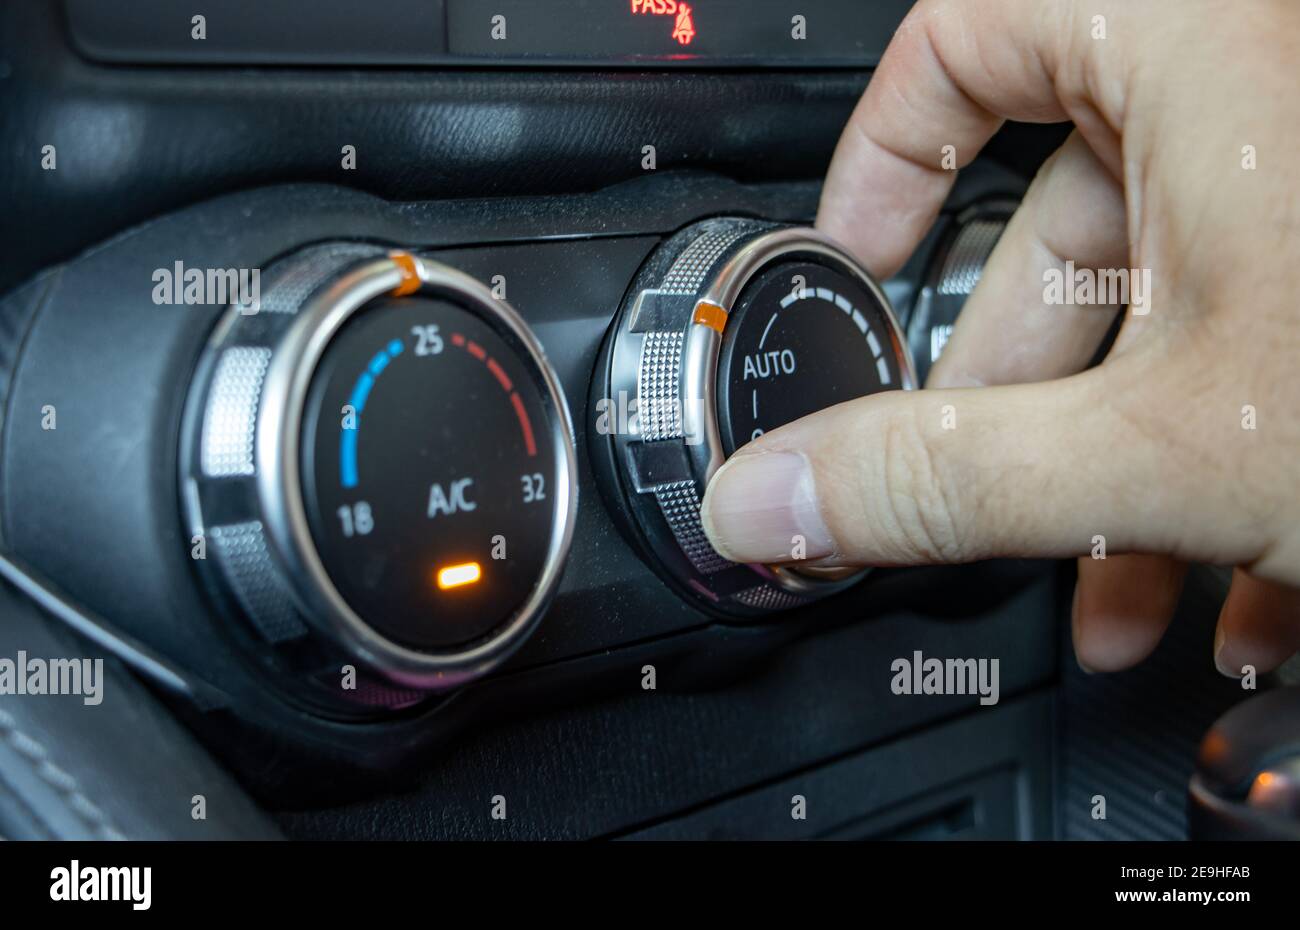 Mit Klimaanlage in einem Auto, Nahaufnahme. Die Hand manipuliert den Lüftungsregler im Fahrzeug. Stockfoto